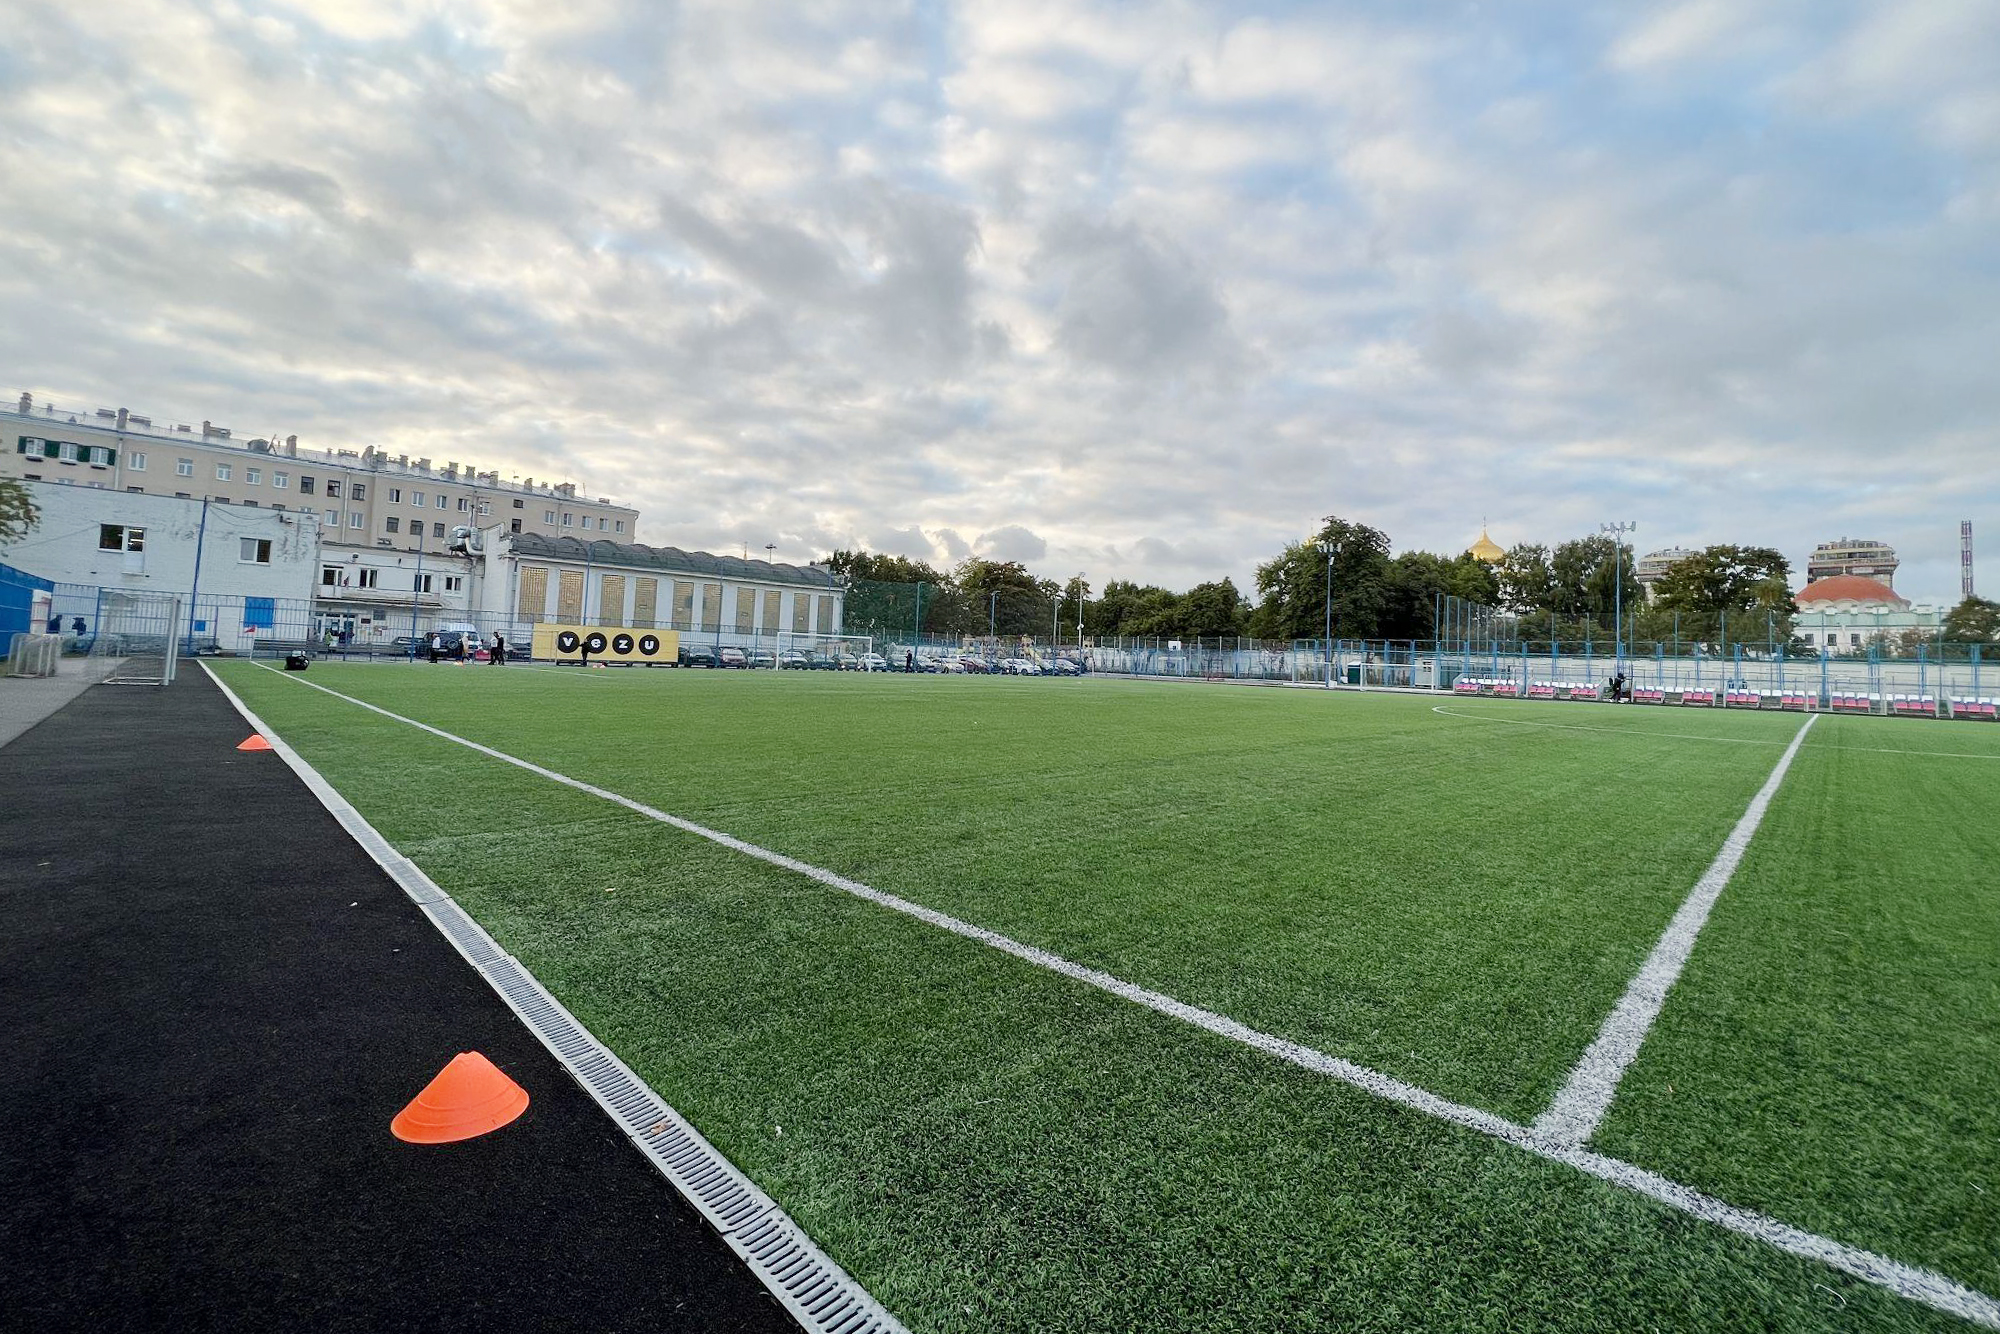 Так выглядит стадион «Скороход» в Московском районе Санкт-Петербурга, на котором тренируются и играют молодежные команды